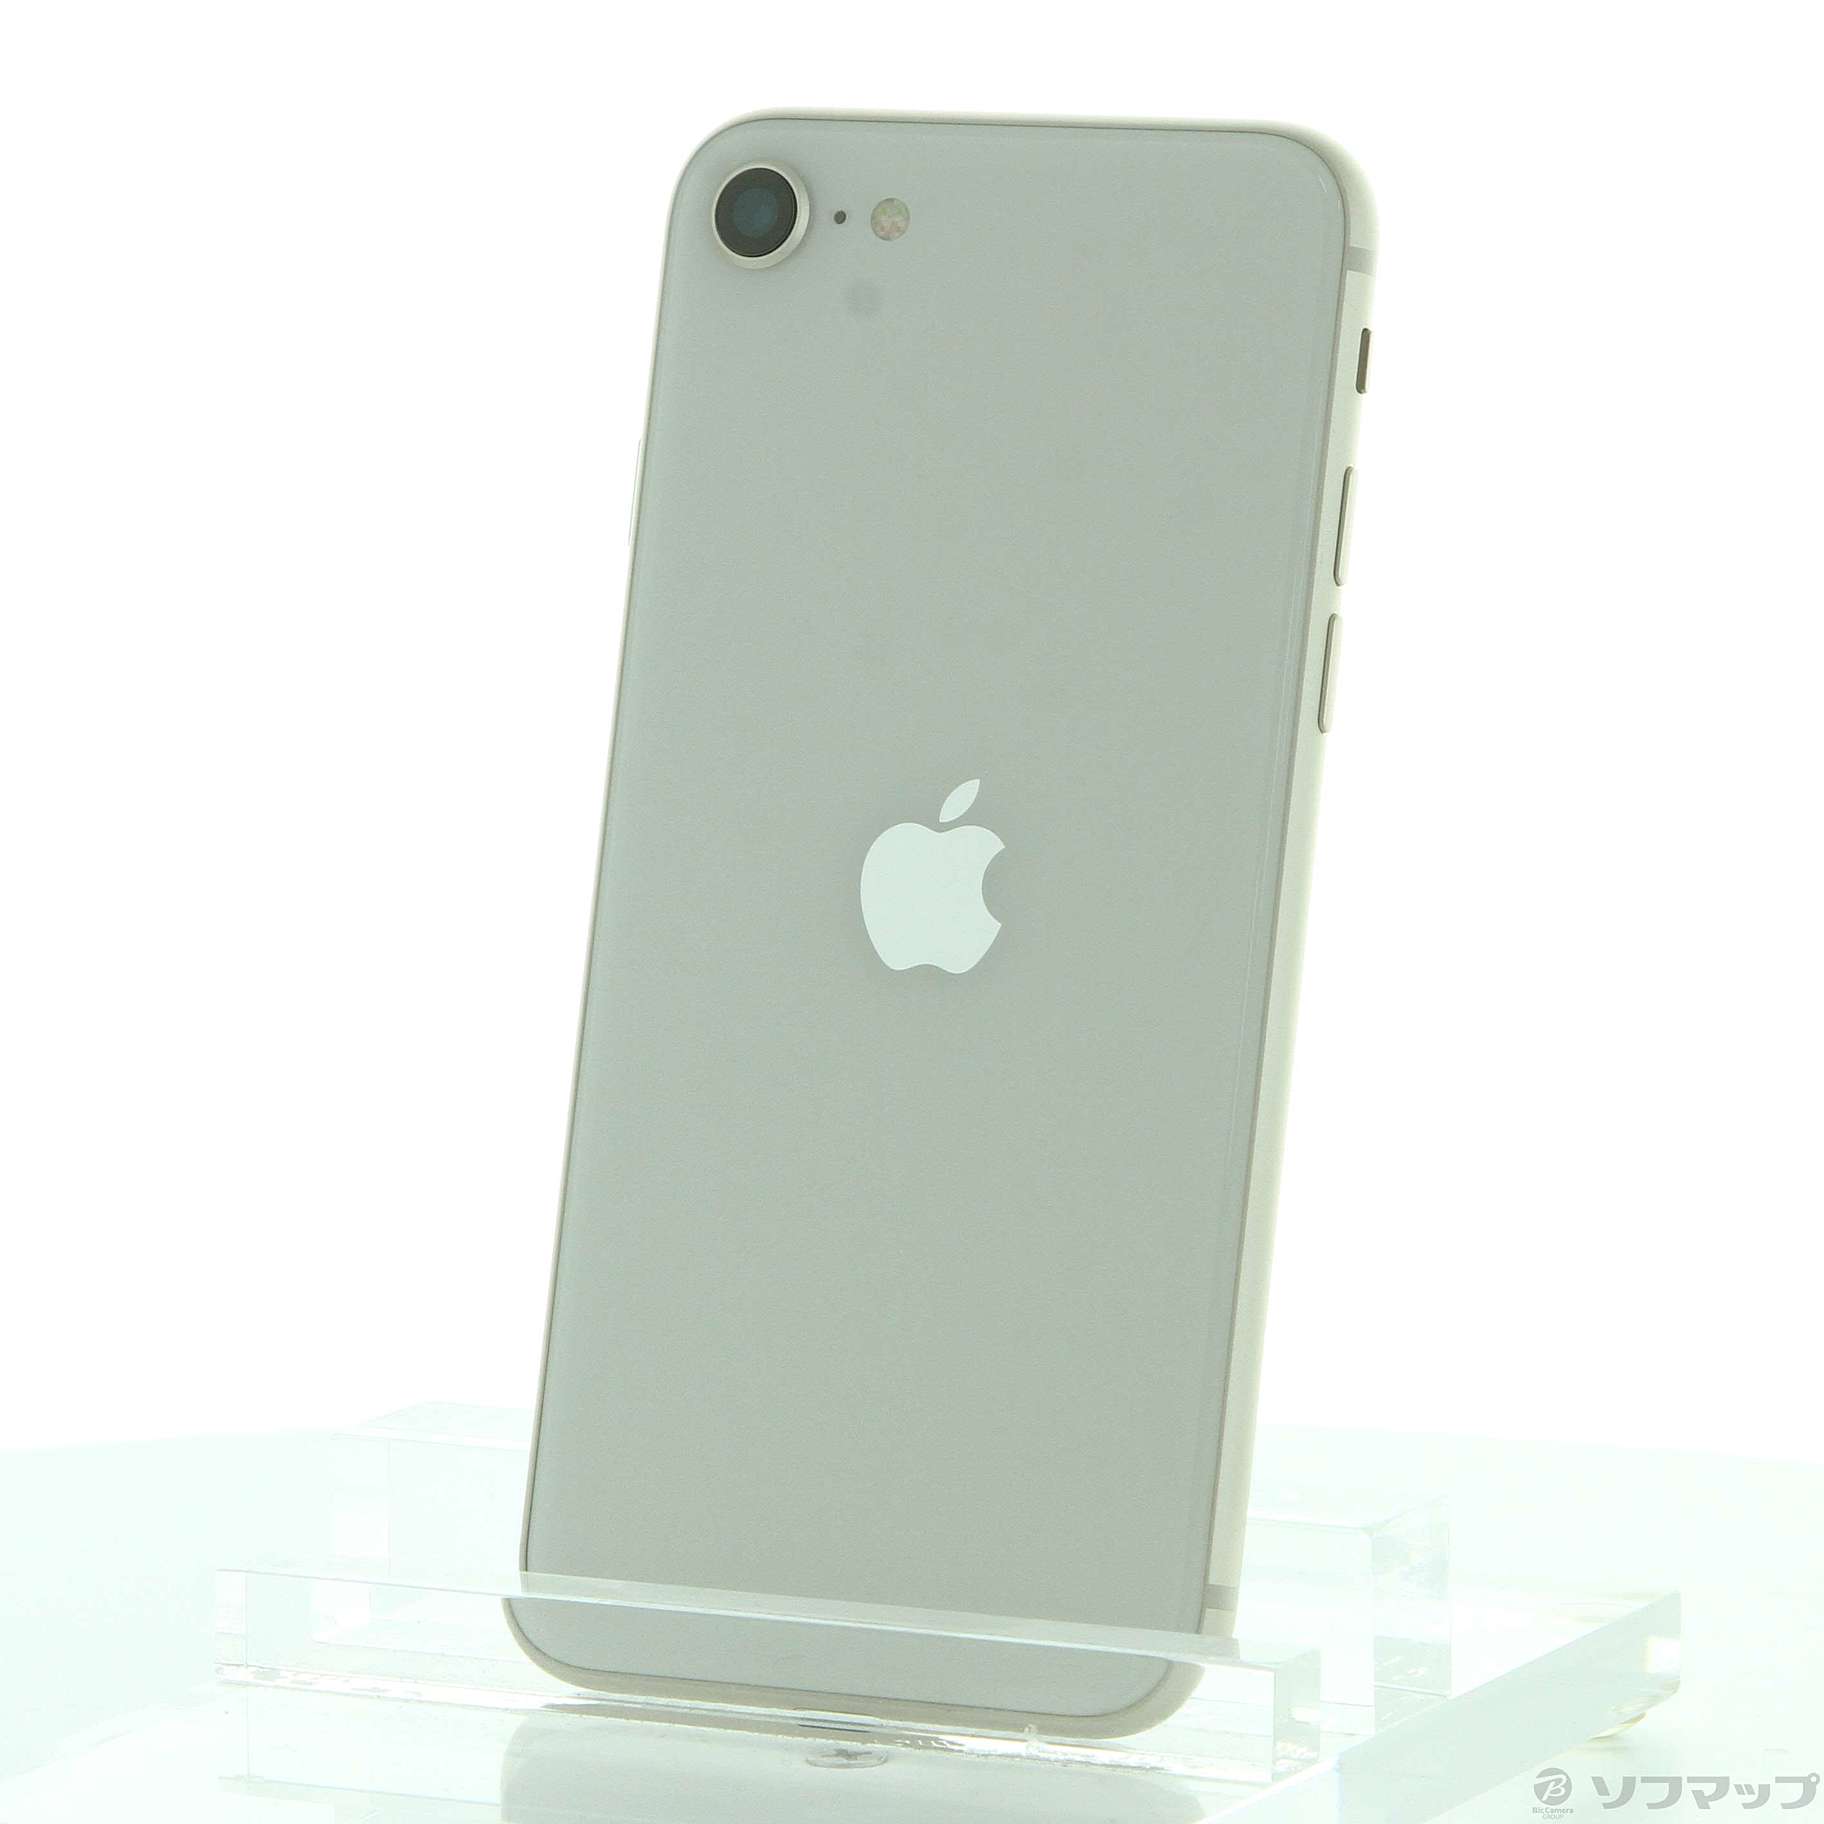 iPhone SE (第3世代) スターライト 128 GB SIMフリーiPhone